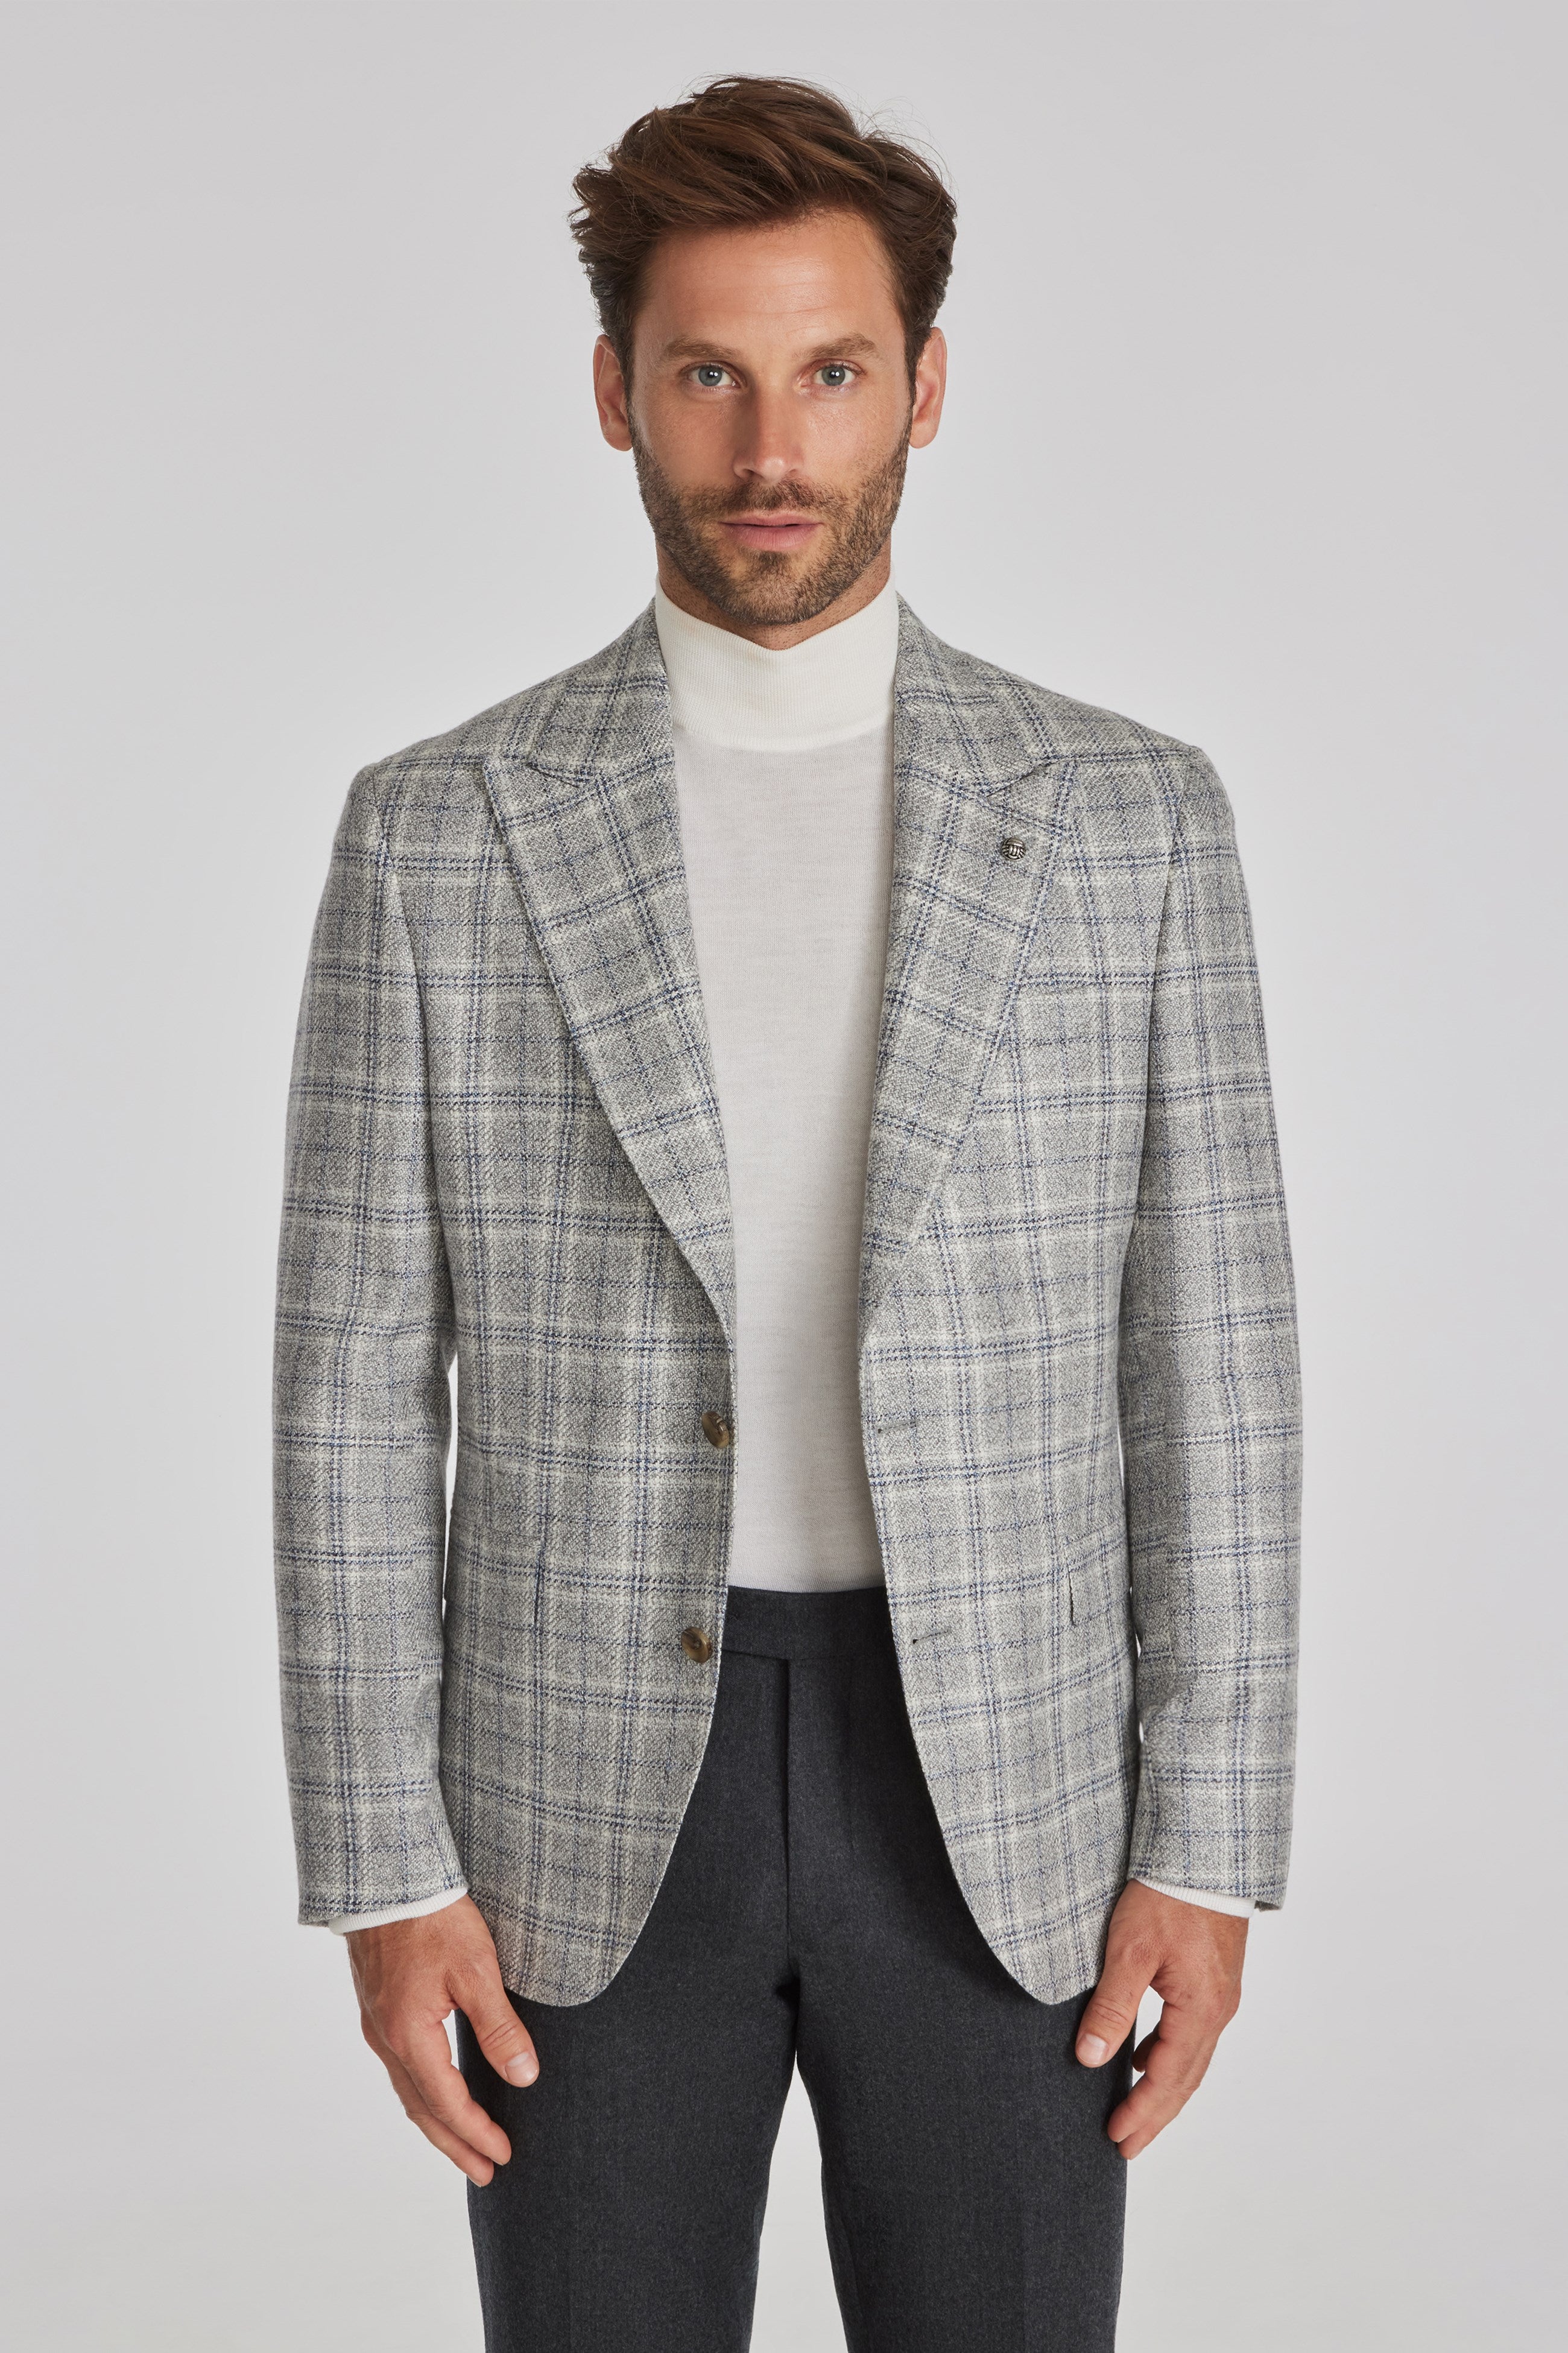 Cotton Cashmere Suit